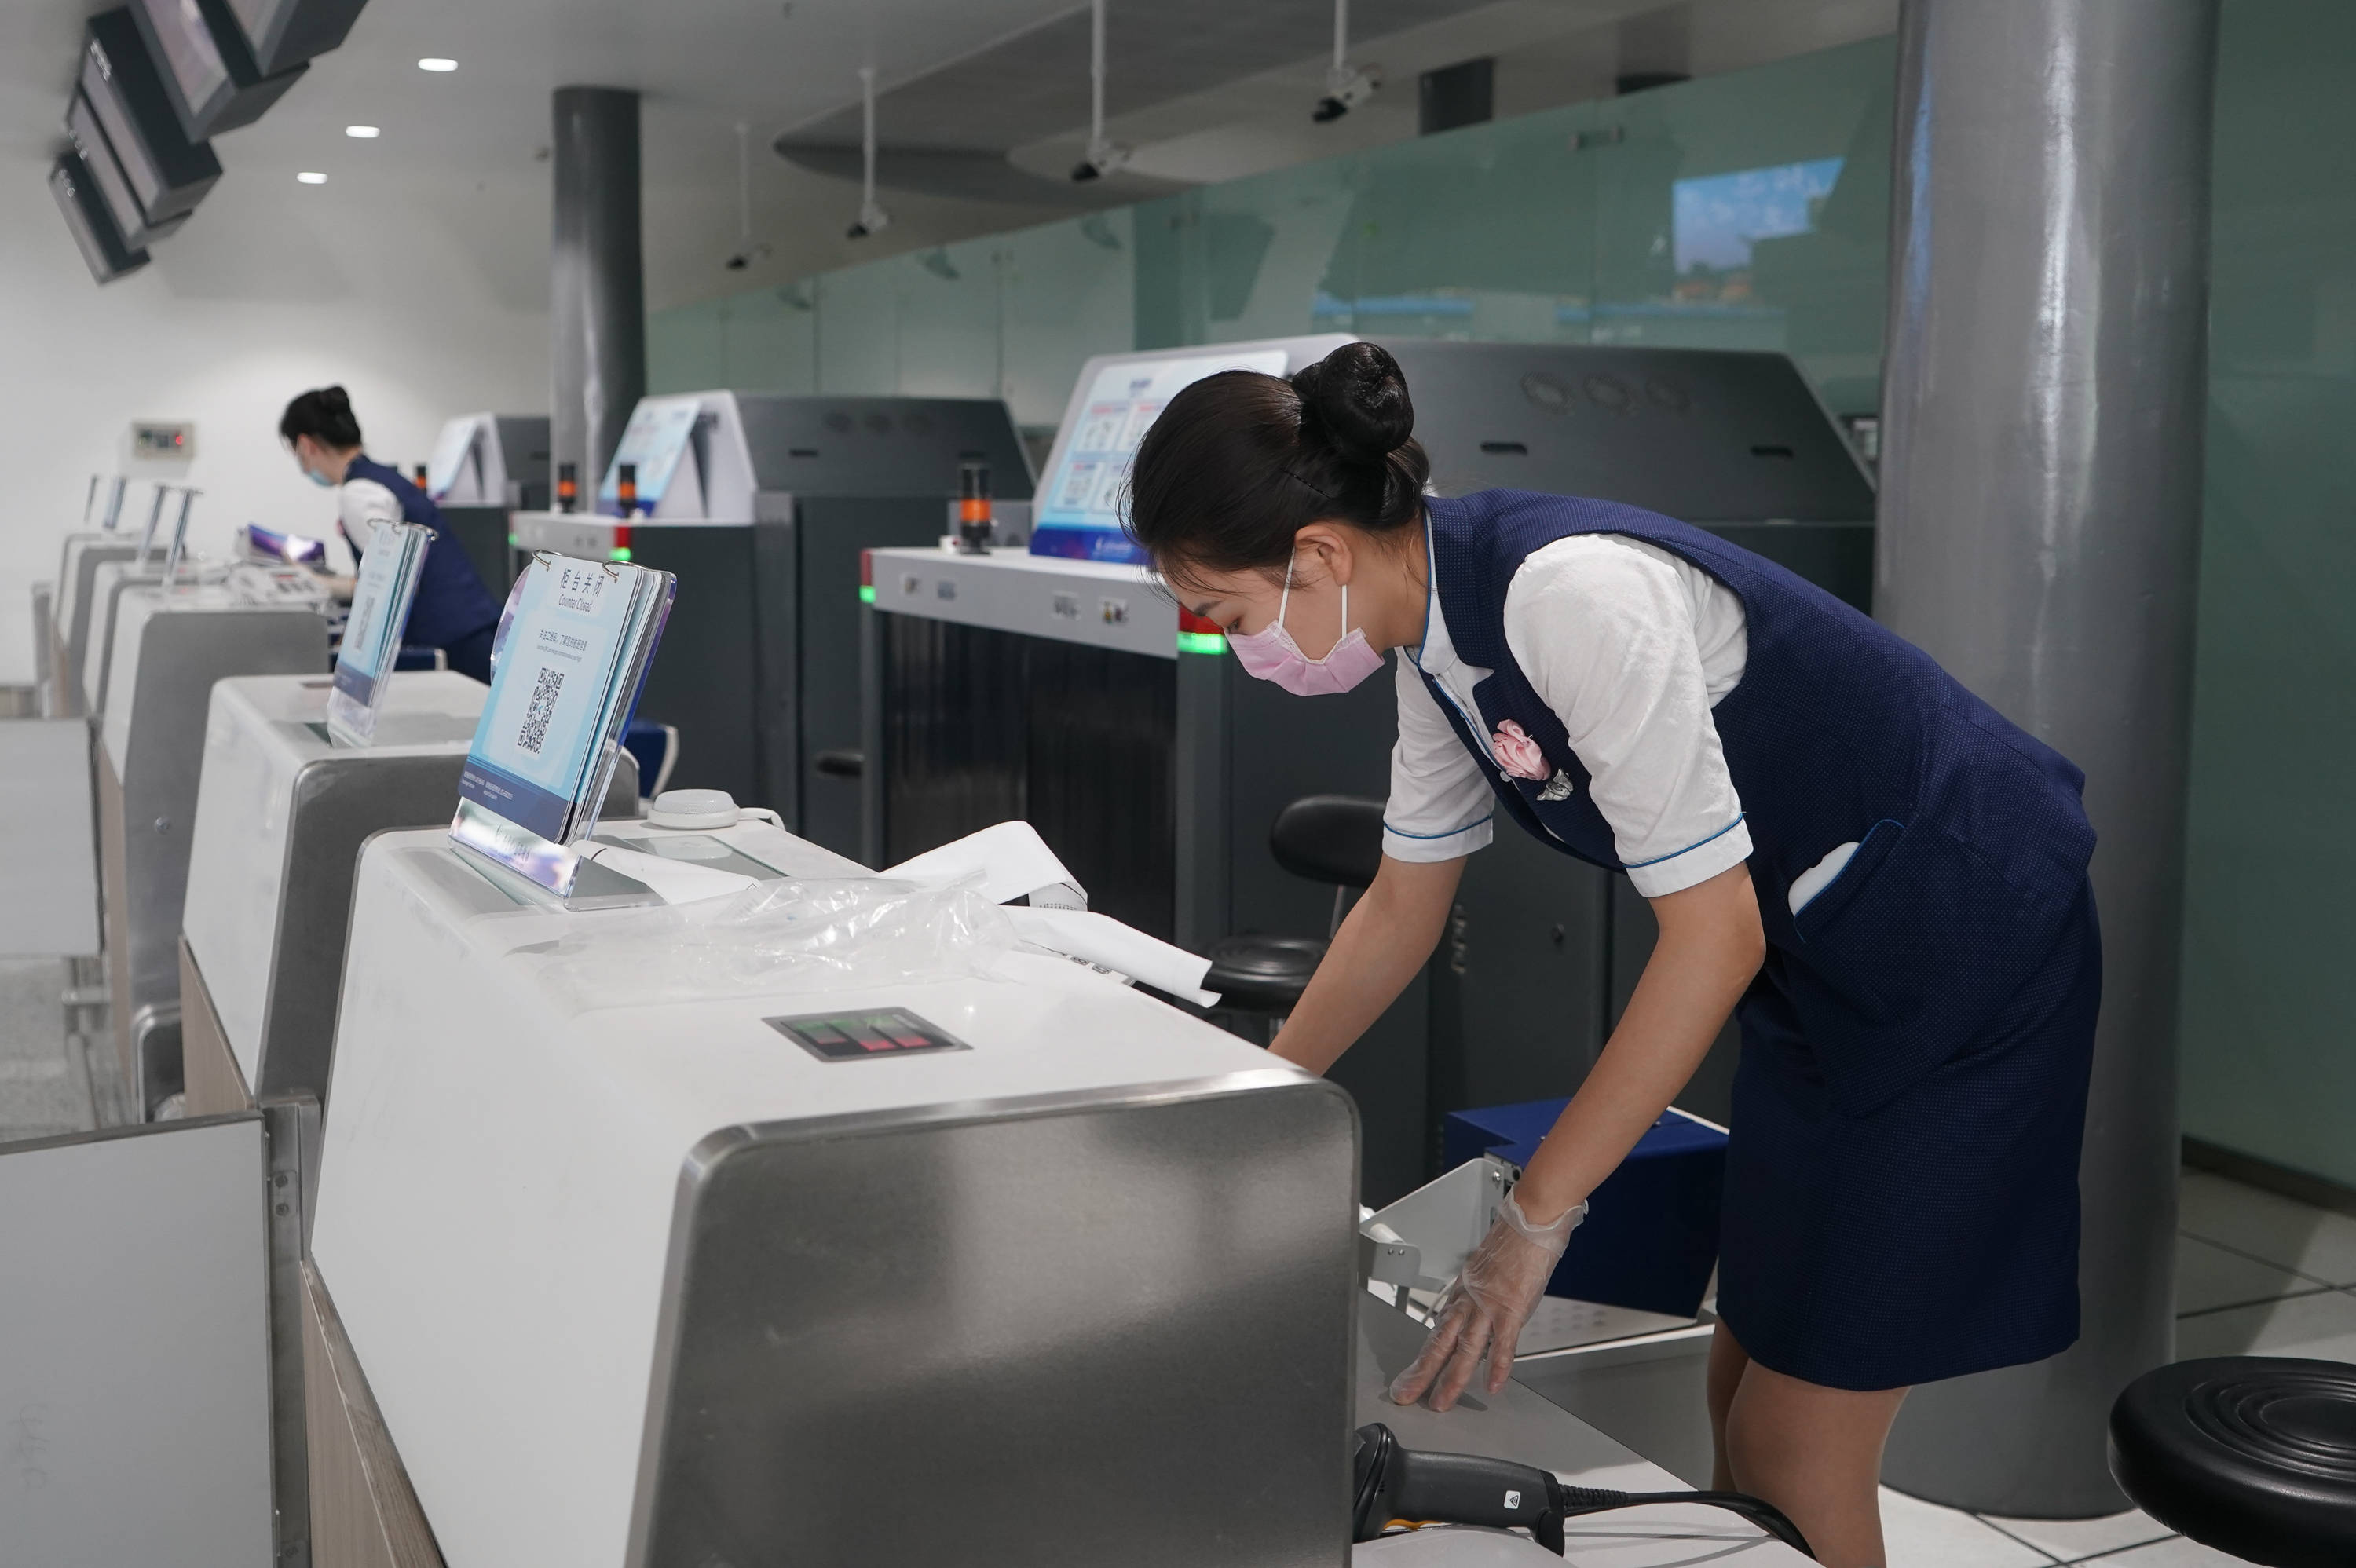 7月29日,在南京禄口国际机场t1航站楼,工作人员在值机岛进行准备工作.